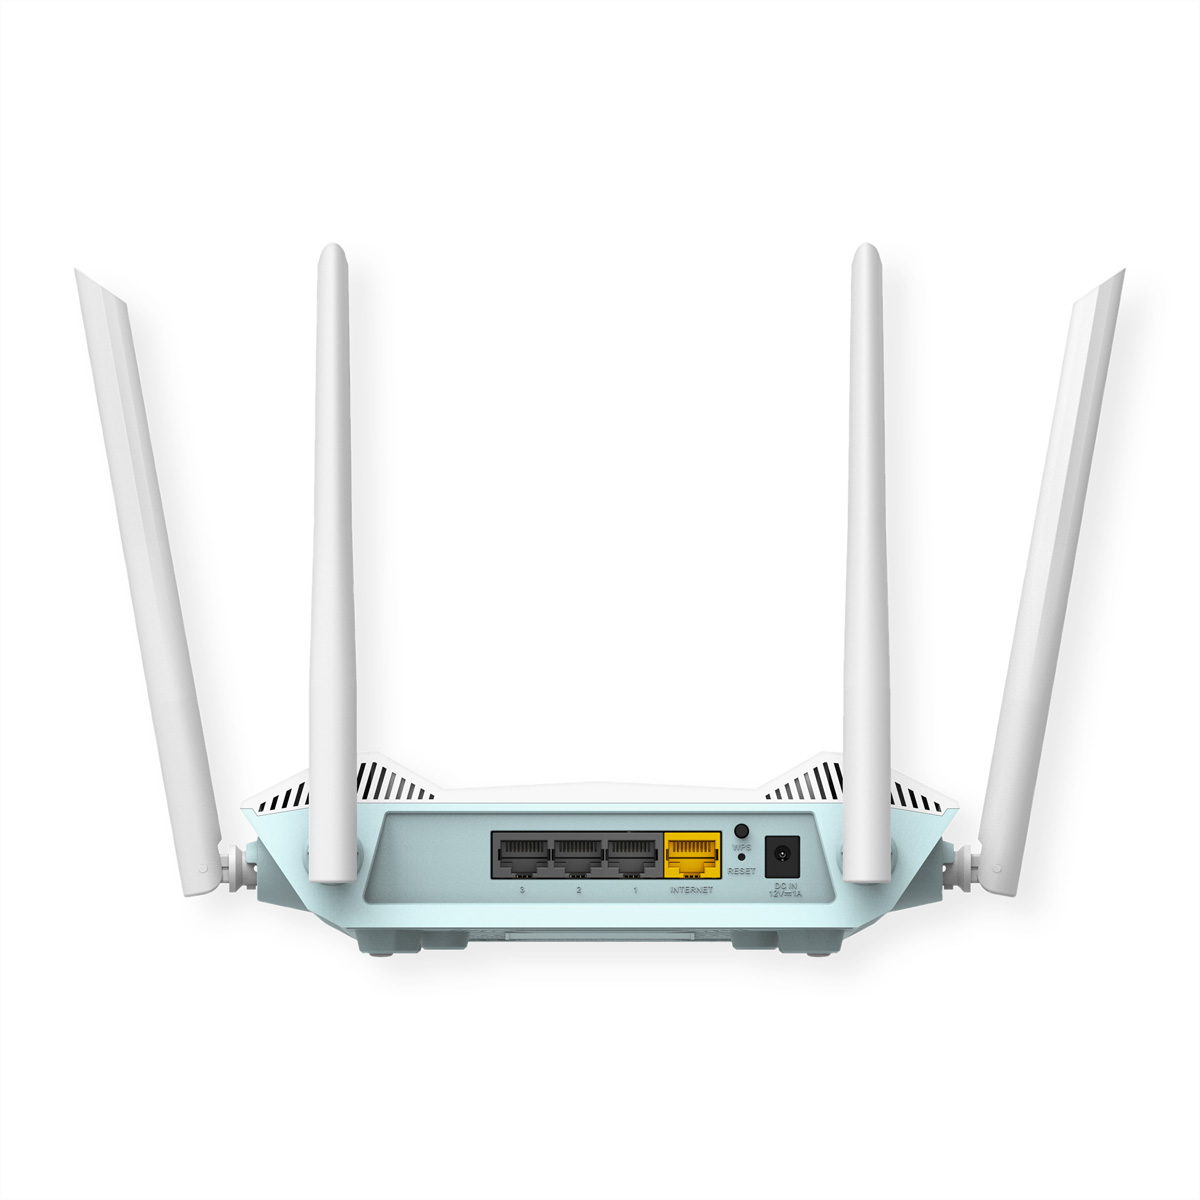 Gbit/s AI D-LINK Smart R15 1,5 Router Access Point PRO AX1500 EAGLE